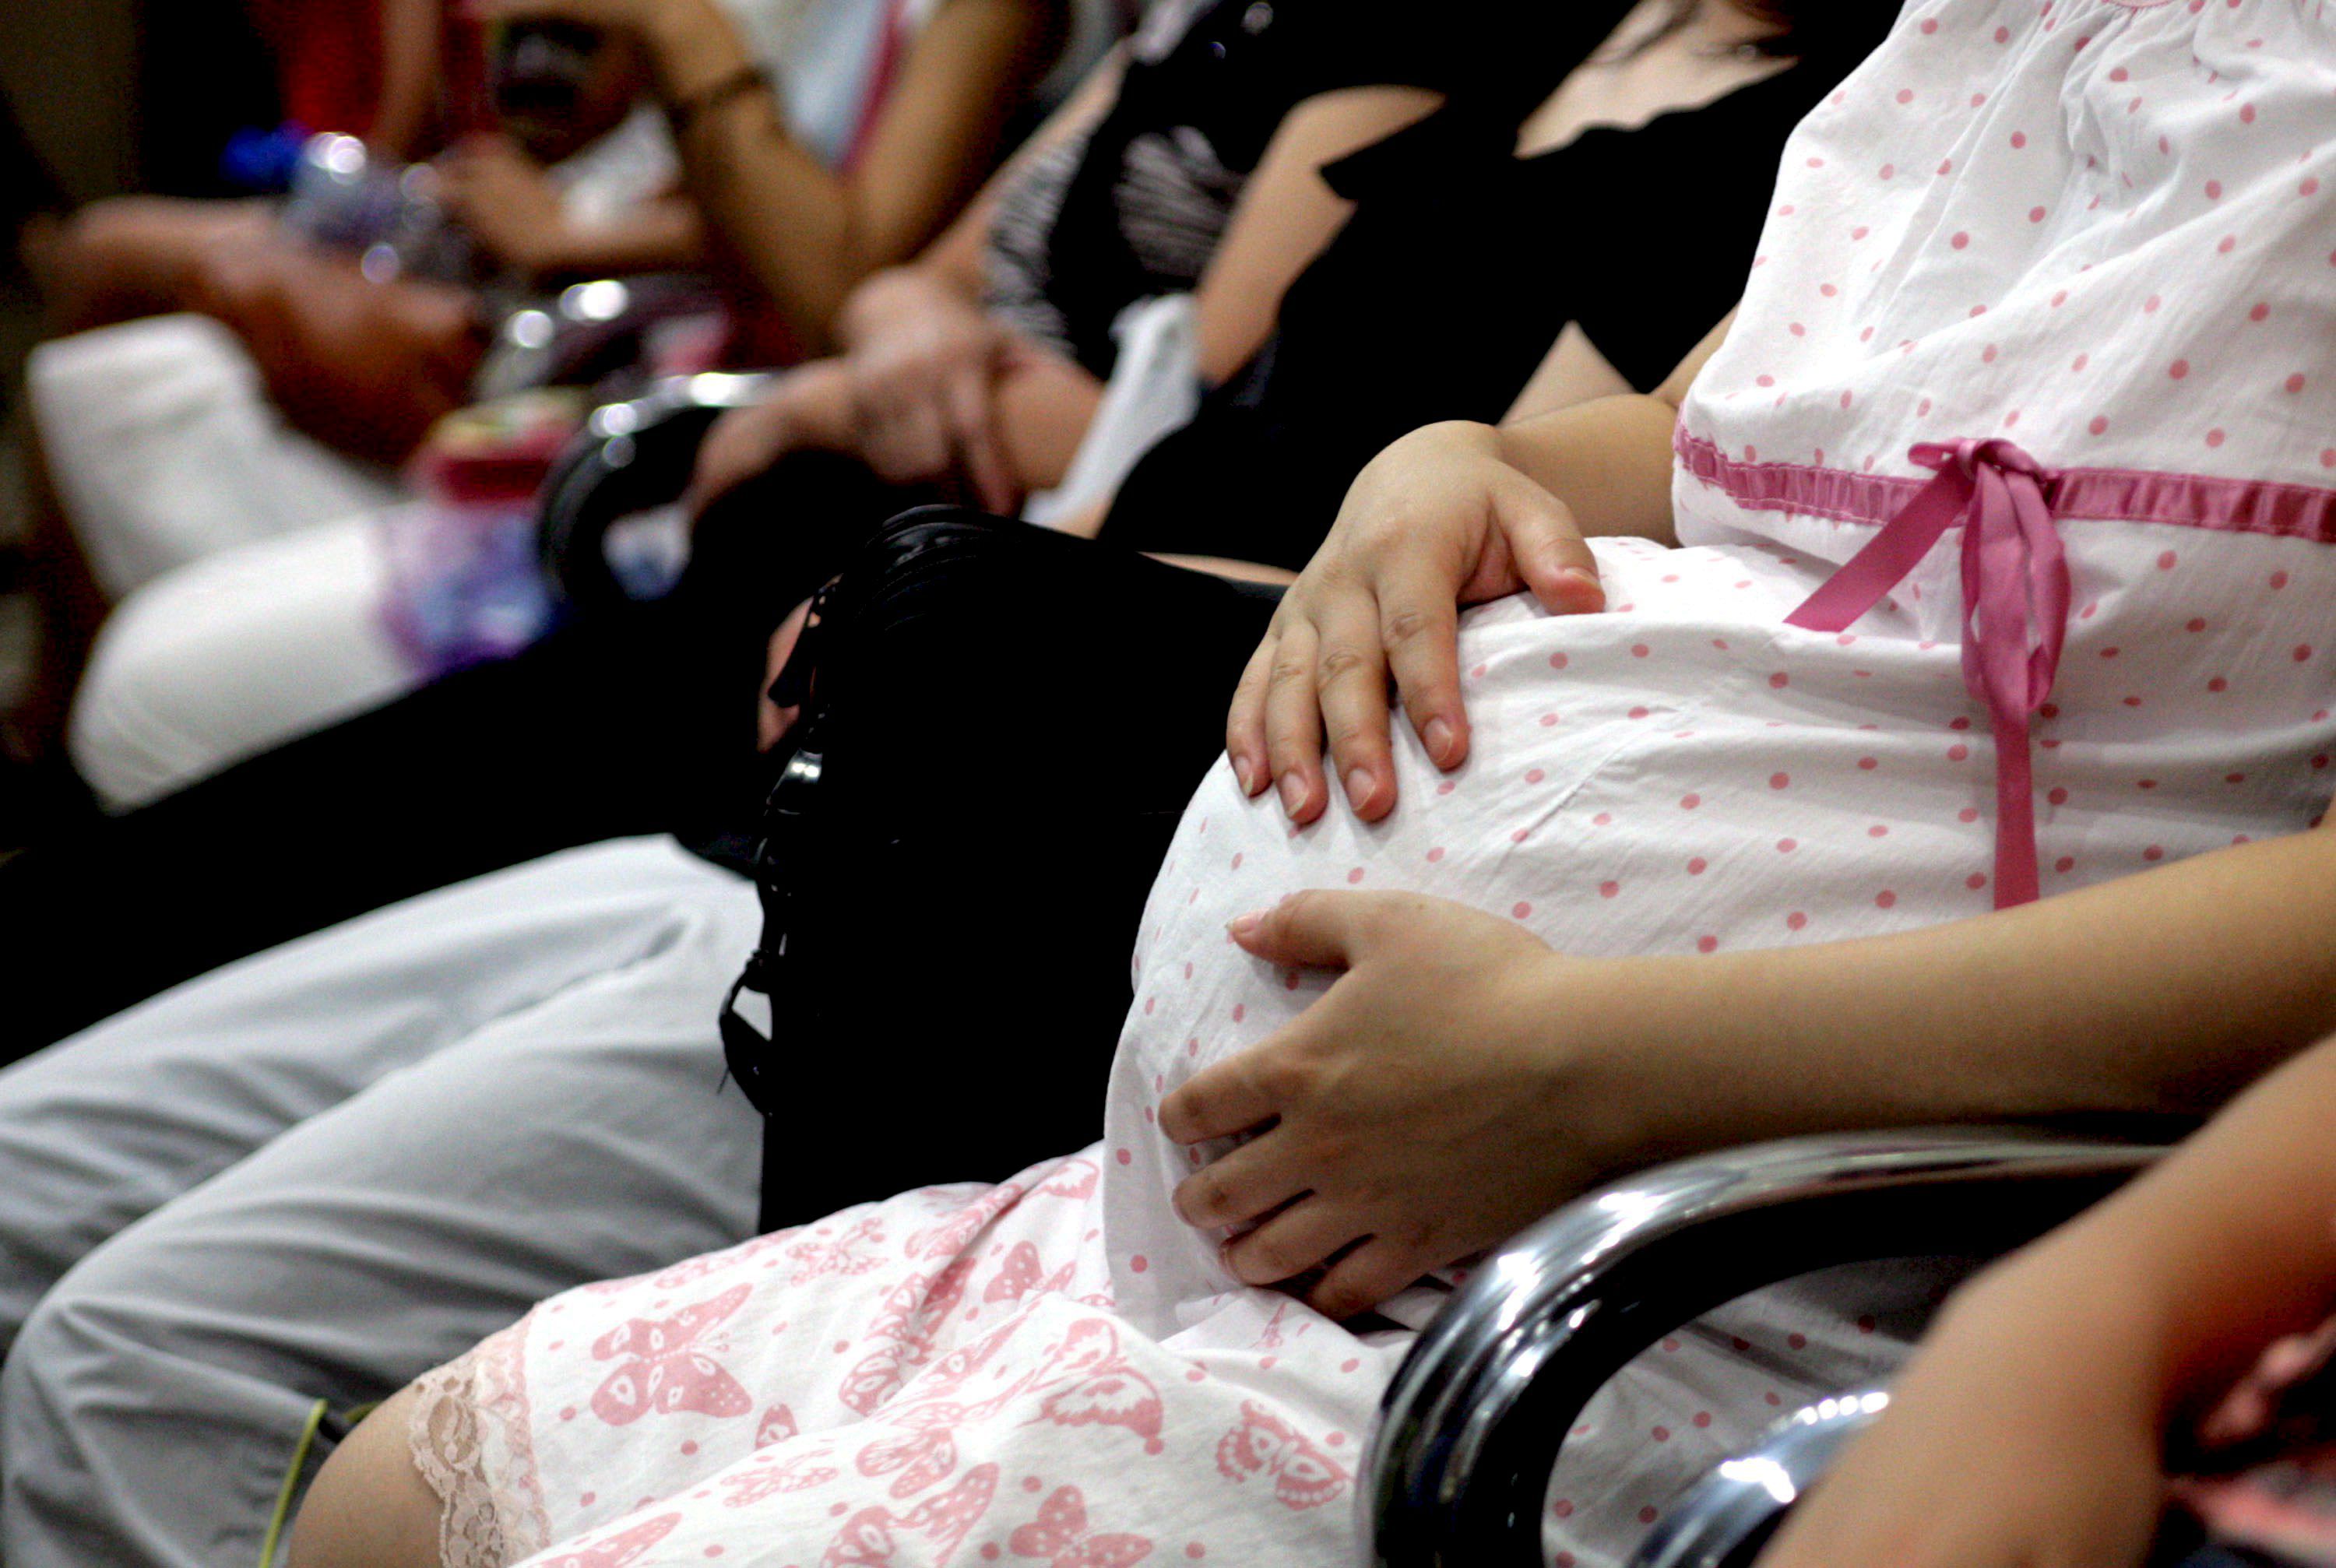 Las Mujeres embarazadas recibirán un bono pensional por cada hijo que tengan (hasta tres), si se aprueba la reforma - crédito Bao Dunyuan/EFE